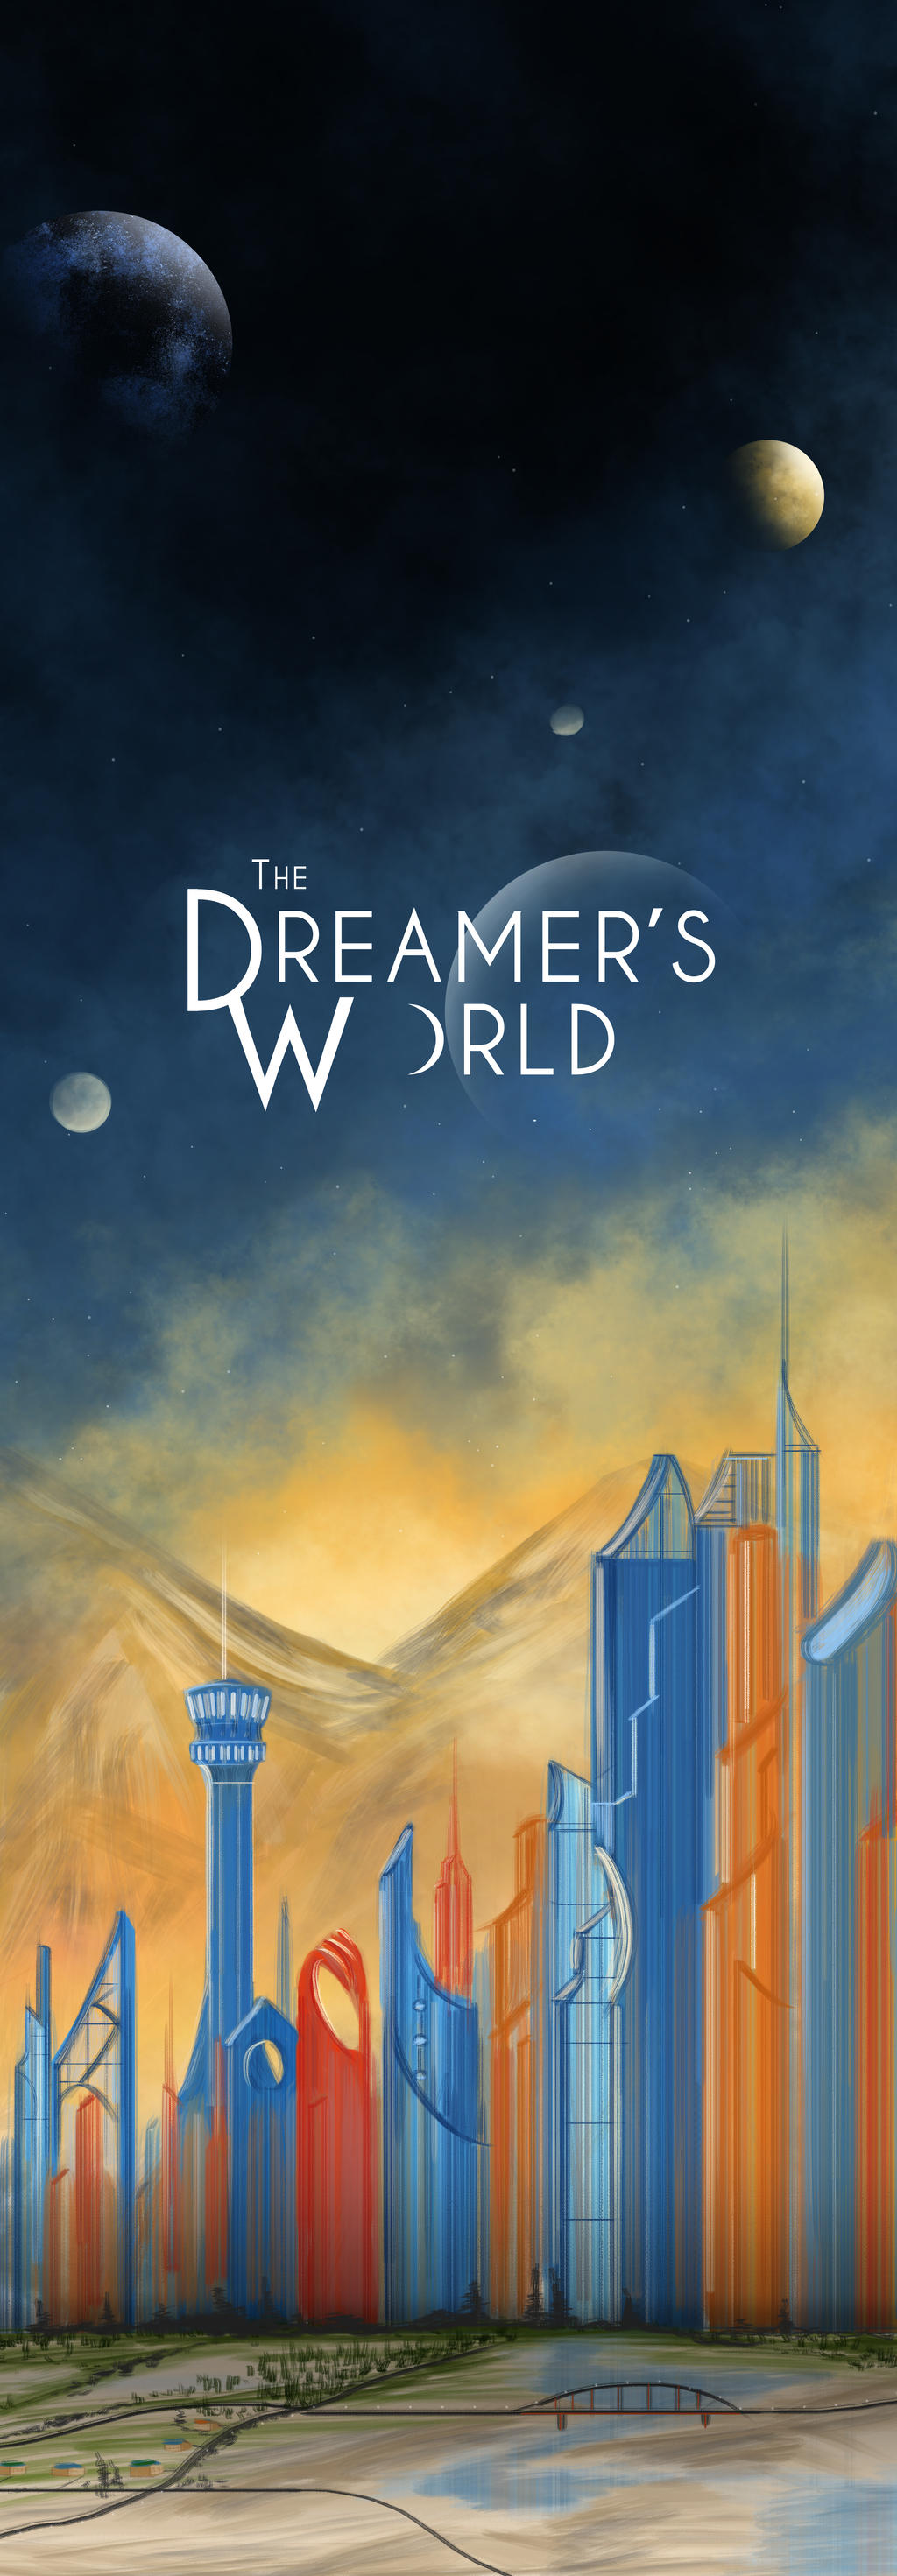 The Dreamer's World